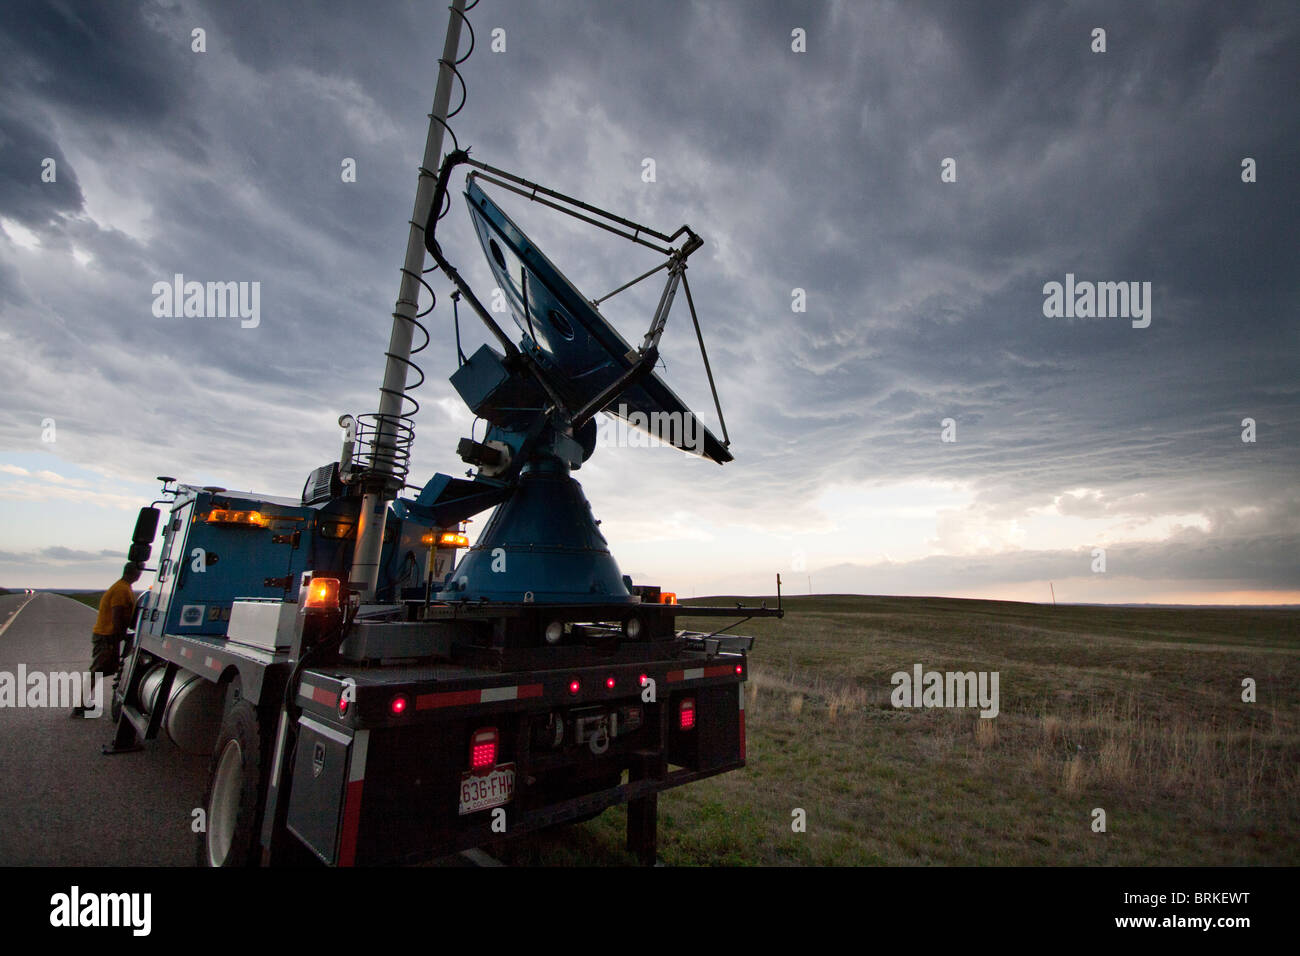 Un Doppler Sobre Ruedas carretilla supercellular explora una tormenta en la zona rural de Wyoming, 21 de mayo de 2010. Foto de stock